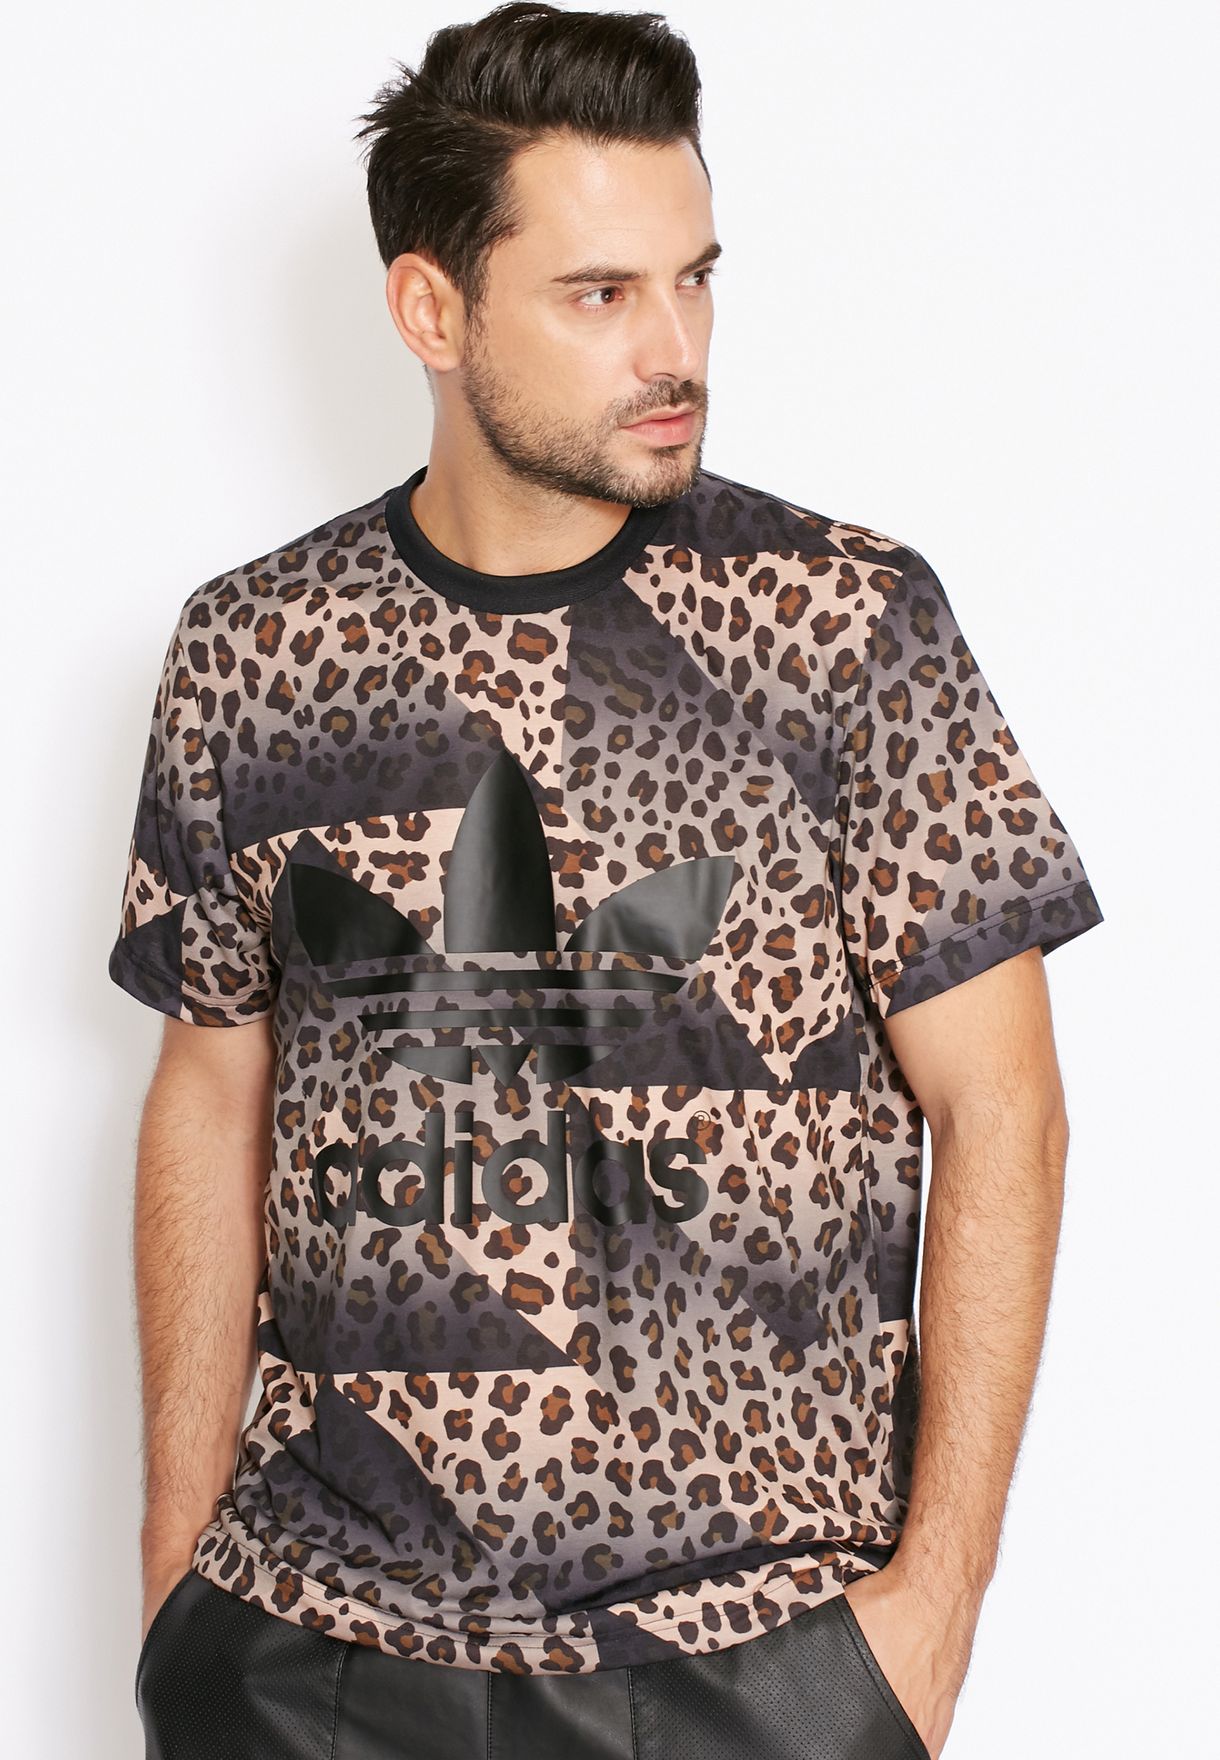 Cheetah Print Jersey for Men in MENA 